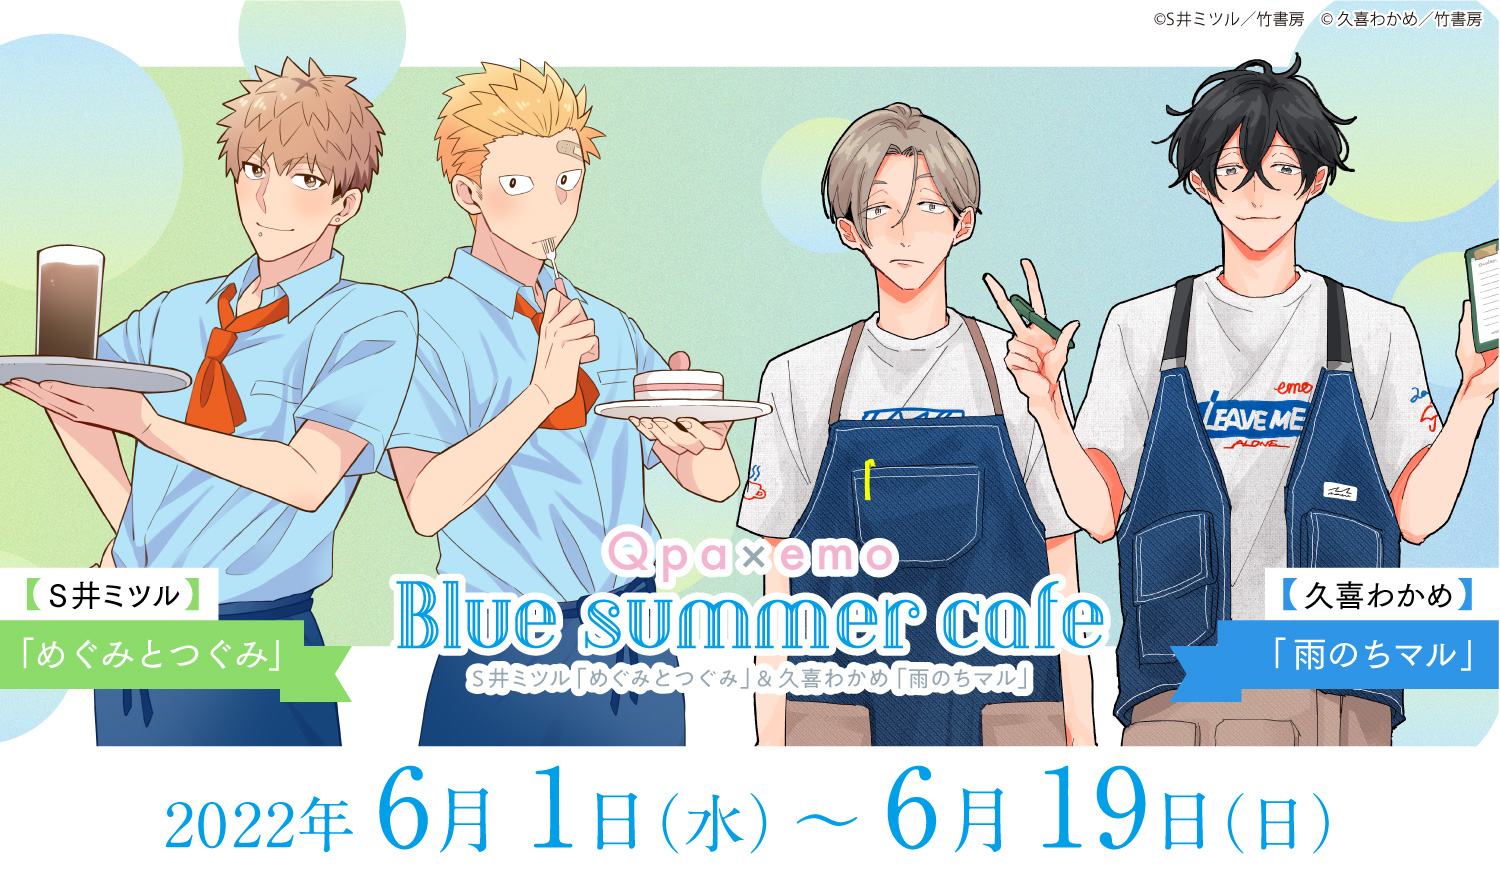 Blue Summer cafe（S井ミツル「めぐみとつぐみ」/久喜わかめ「雨